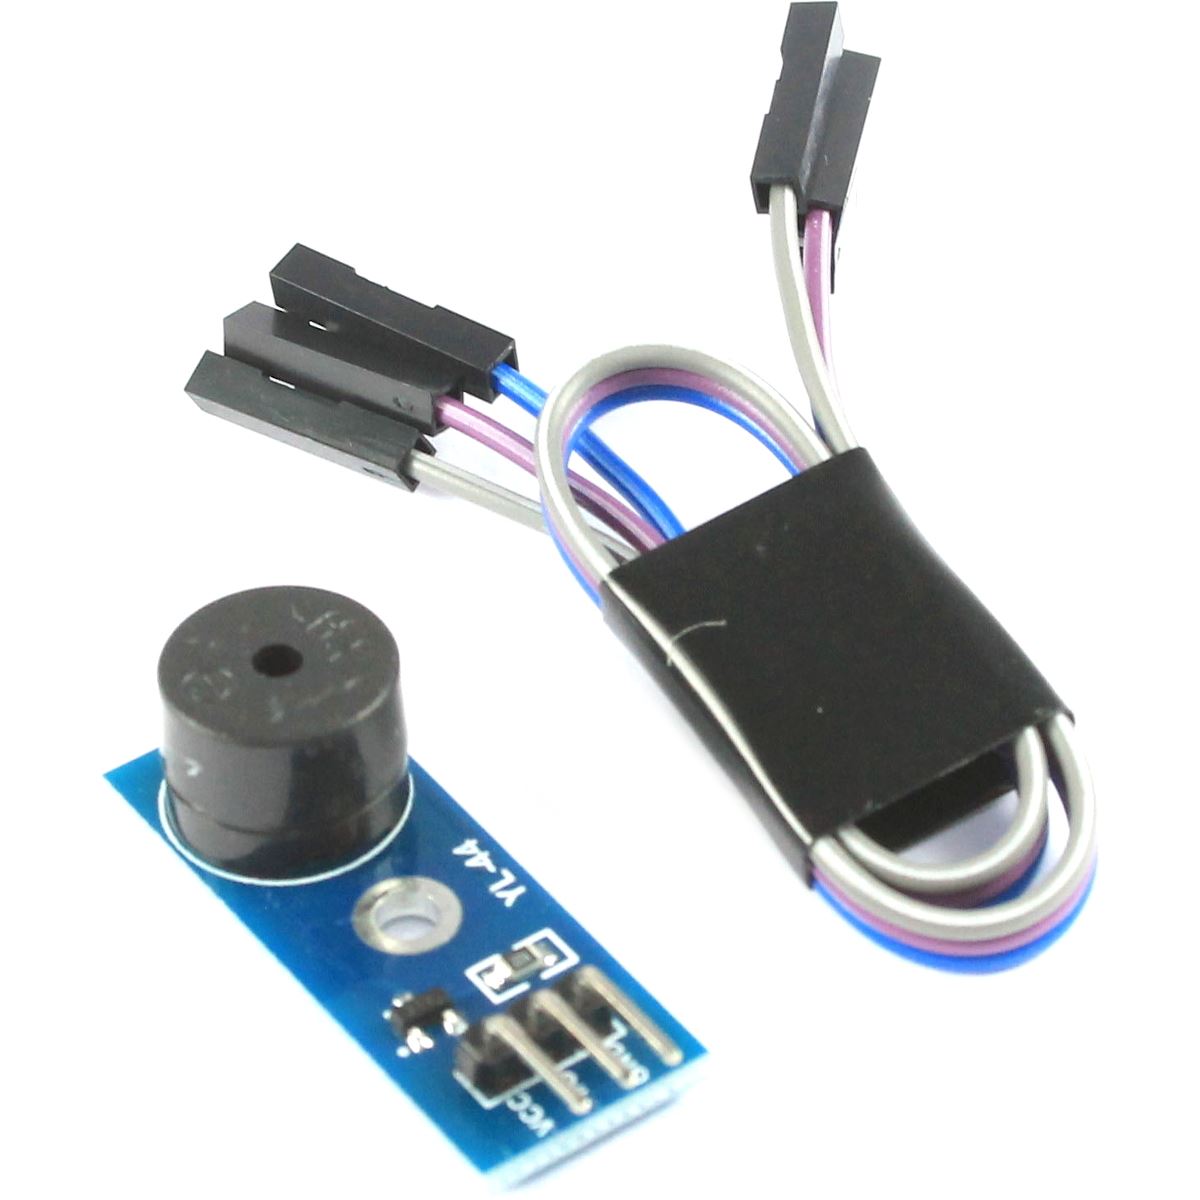 Electronic Tone Buzzer - Alarme sonore bip pour Arduino